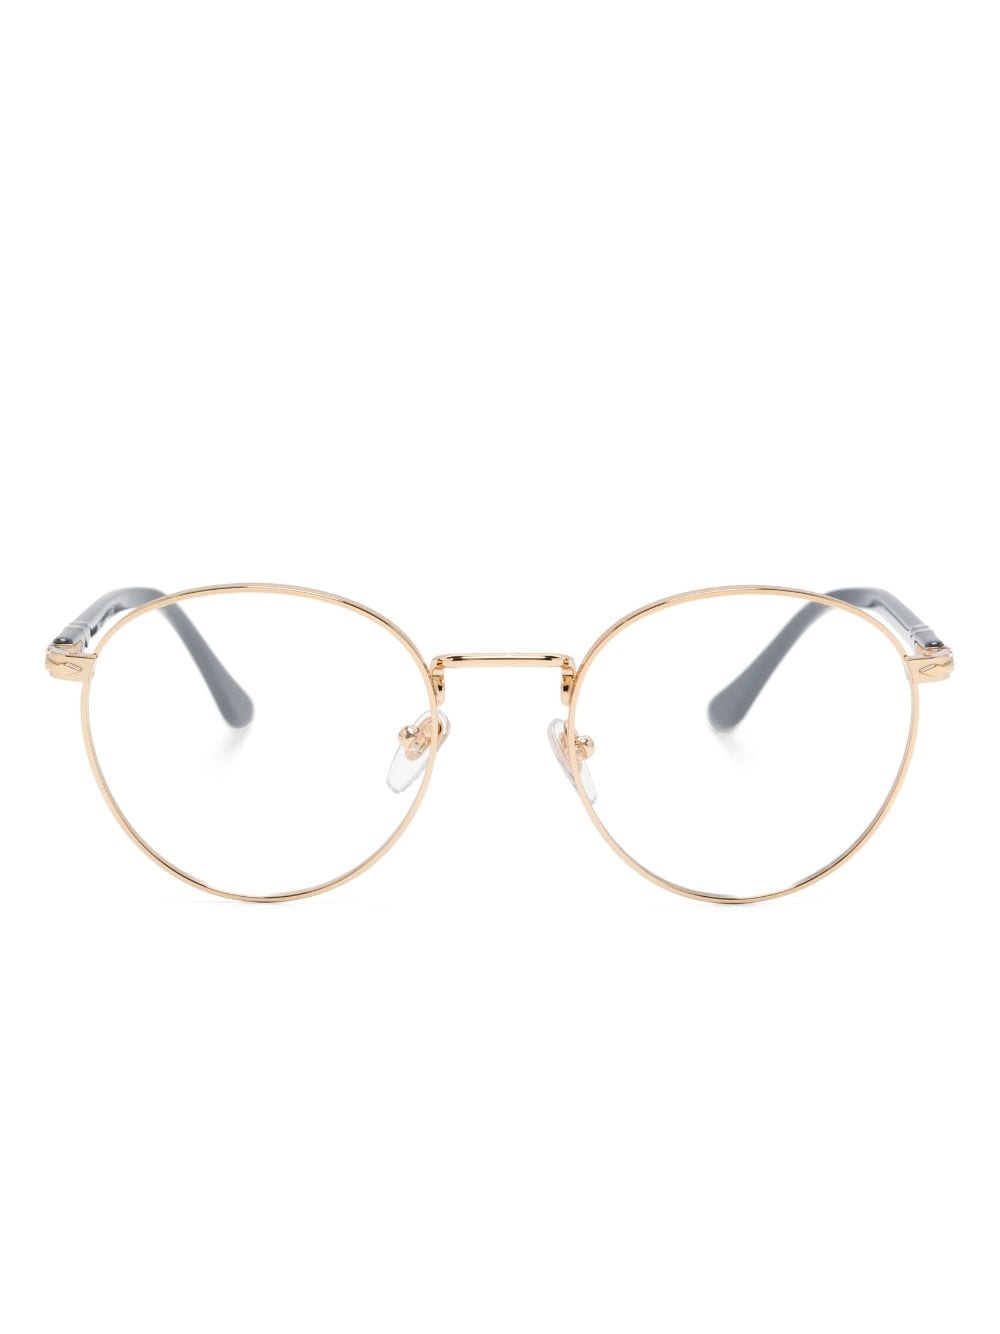 Persol Brille mit rundem Gestell - Gold von Persol